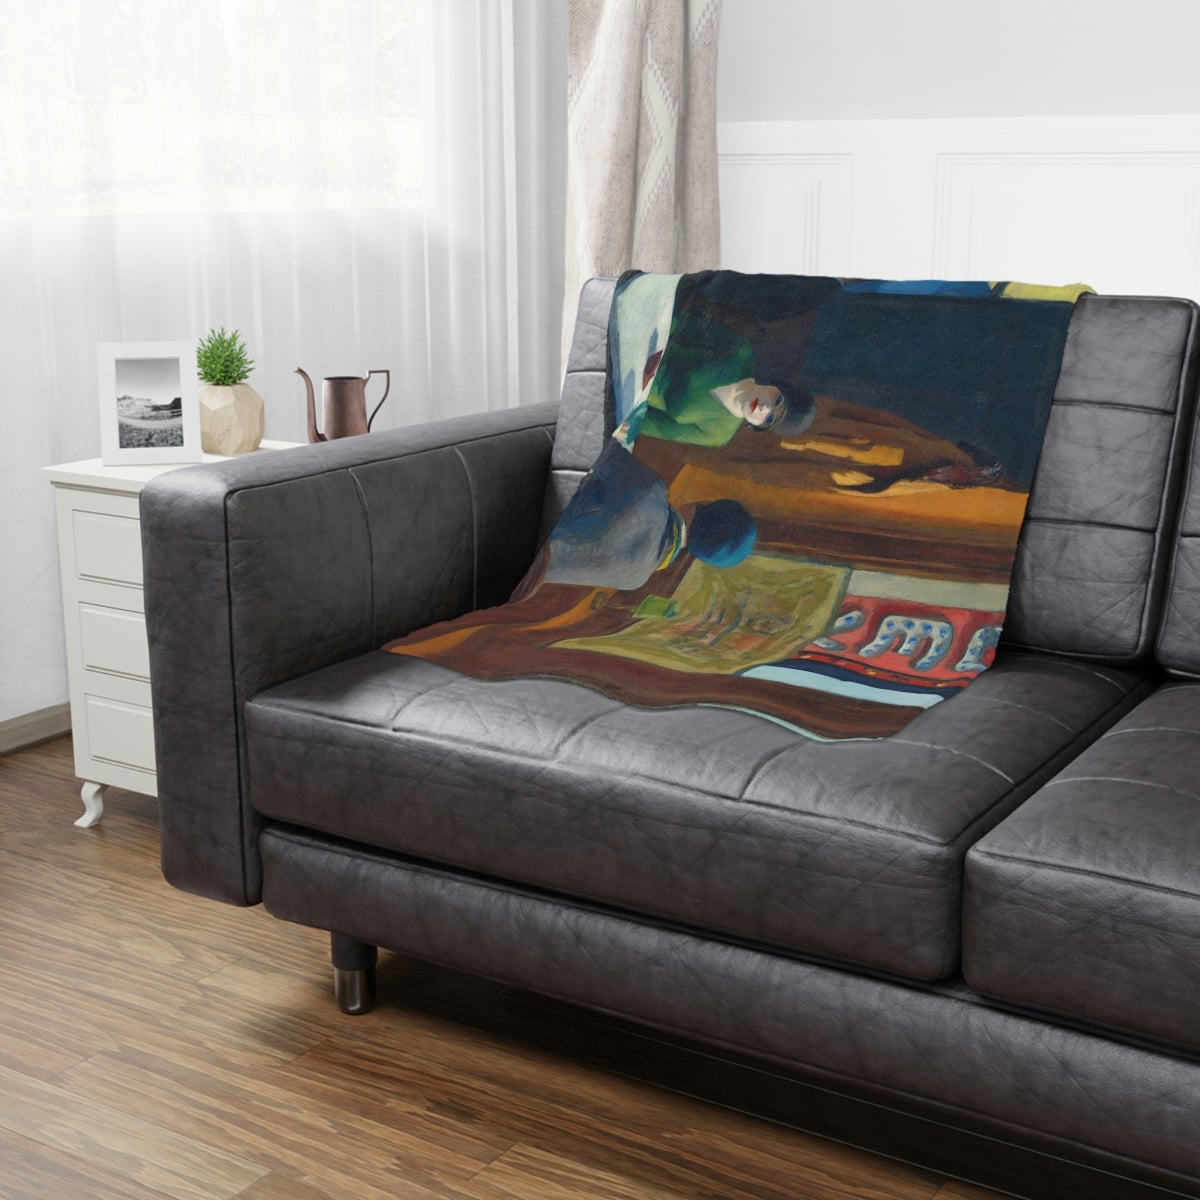 Chop Suey by Edward Hopper Art Blanket in a cozy setting